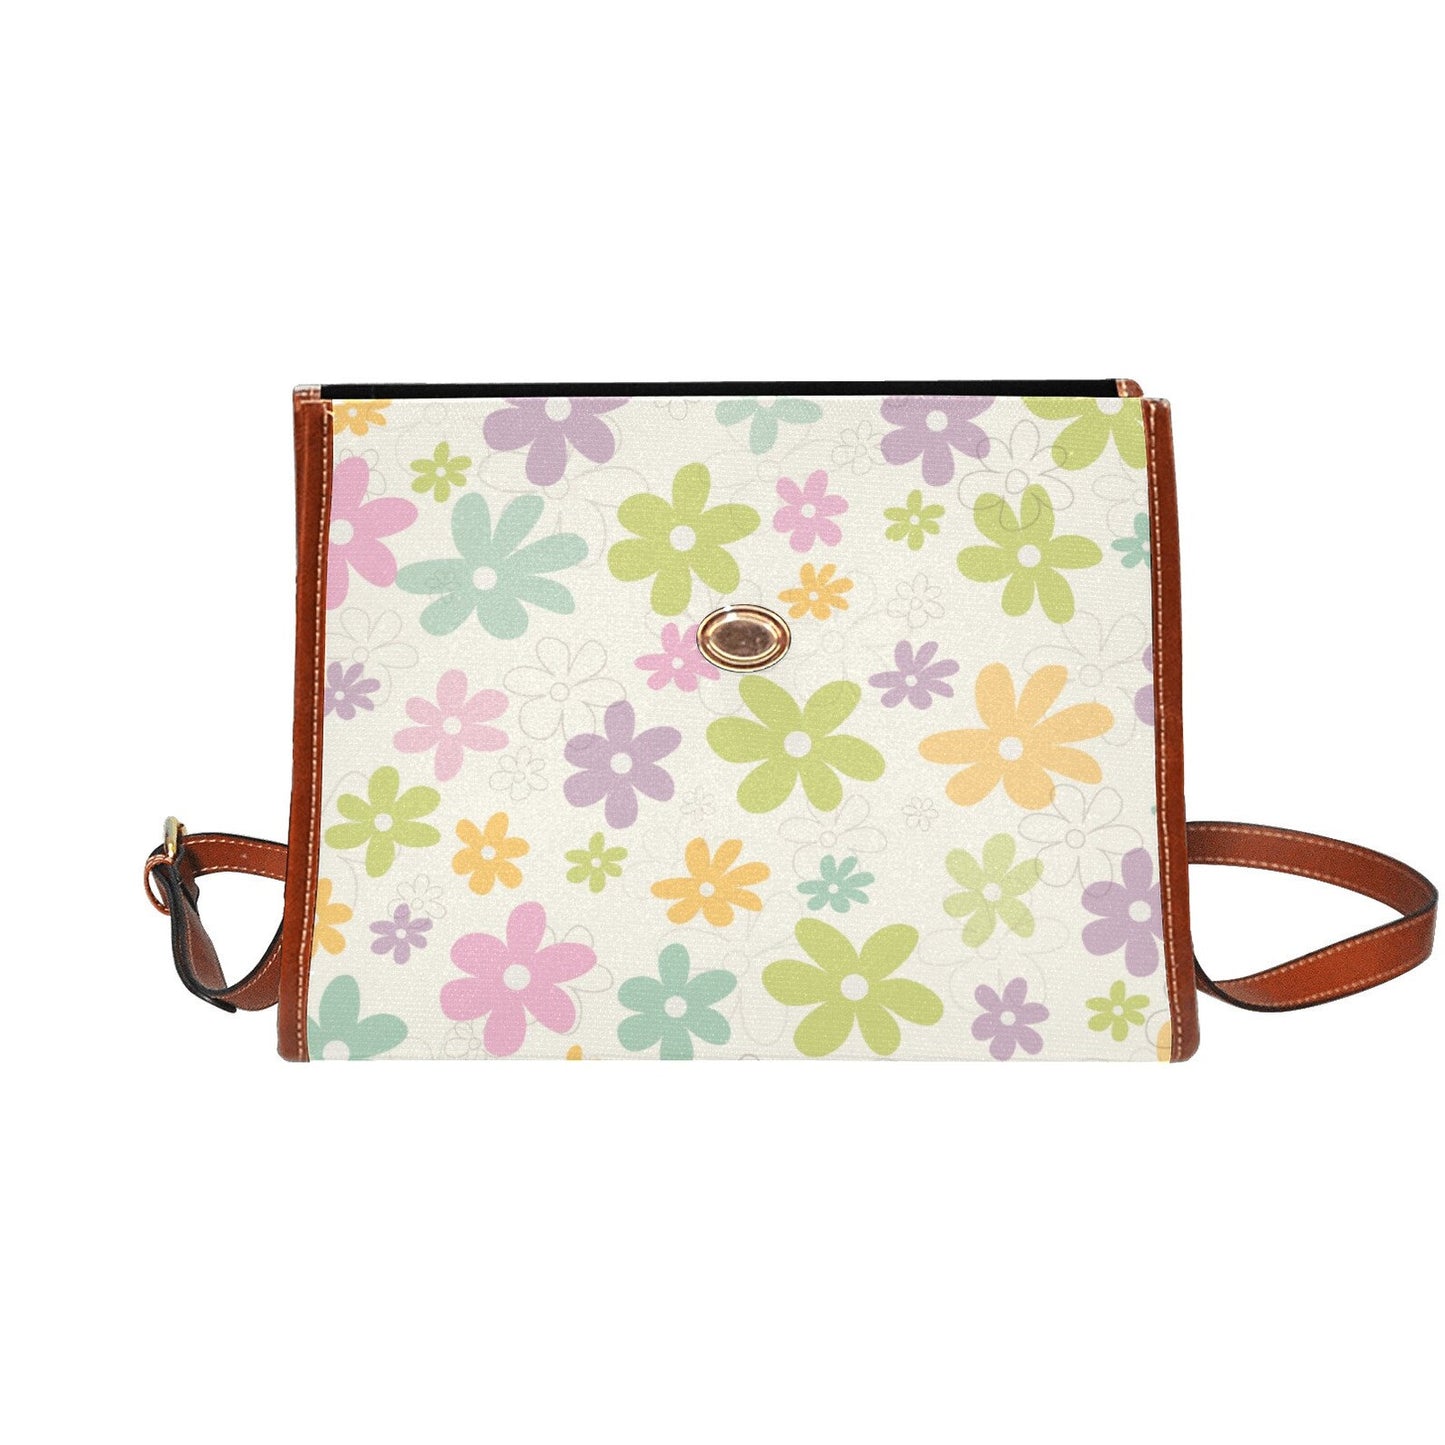 Retro Floral Handbag, Retro Handbag, Pastel floral bag, Floral Purse, 60s style handbag, Vintage handbag style, Retro Satchel Handbag